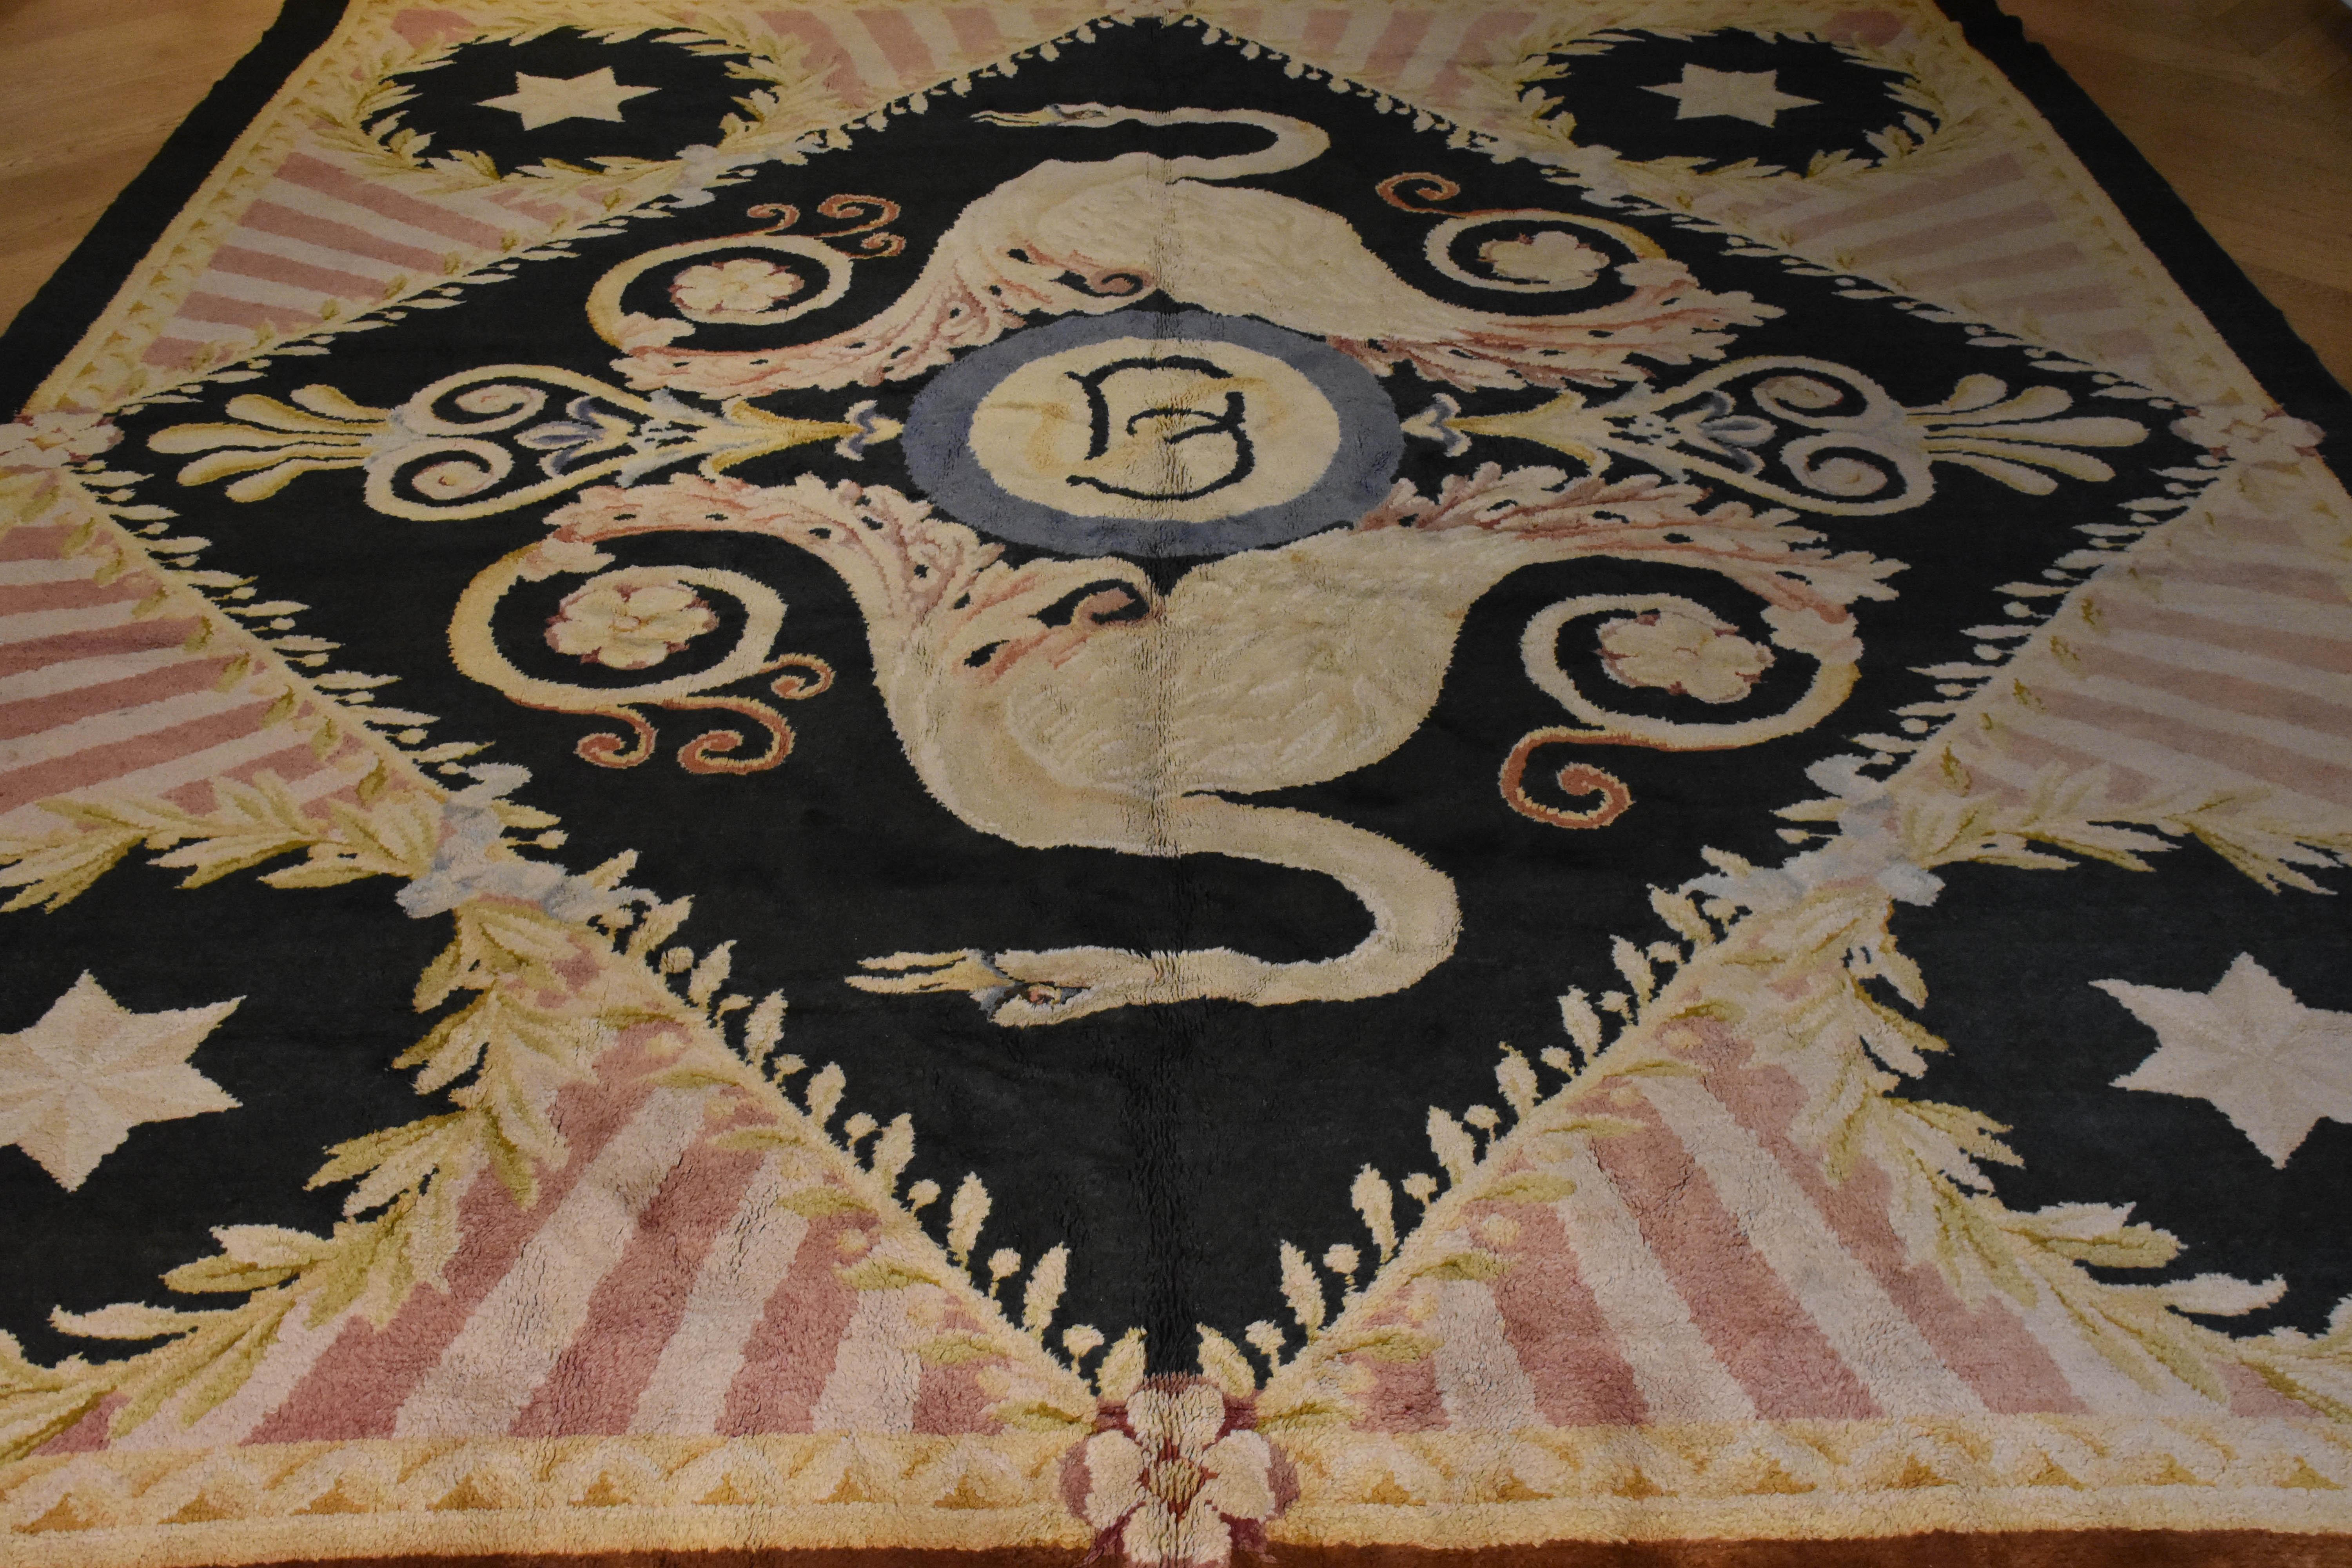 Wichtiger Teppich, der in der Real Manifattura von Madrid (Real Fabrica De Alfombras) hergestellt wurde und aus der berühmten Toms-Sammlung stammt.

Reginald Toms (1892-1978) machte sein Vermögen in der Immobilienbranche, zunächst in London und